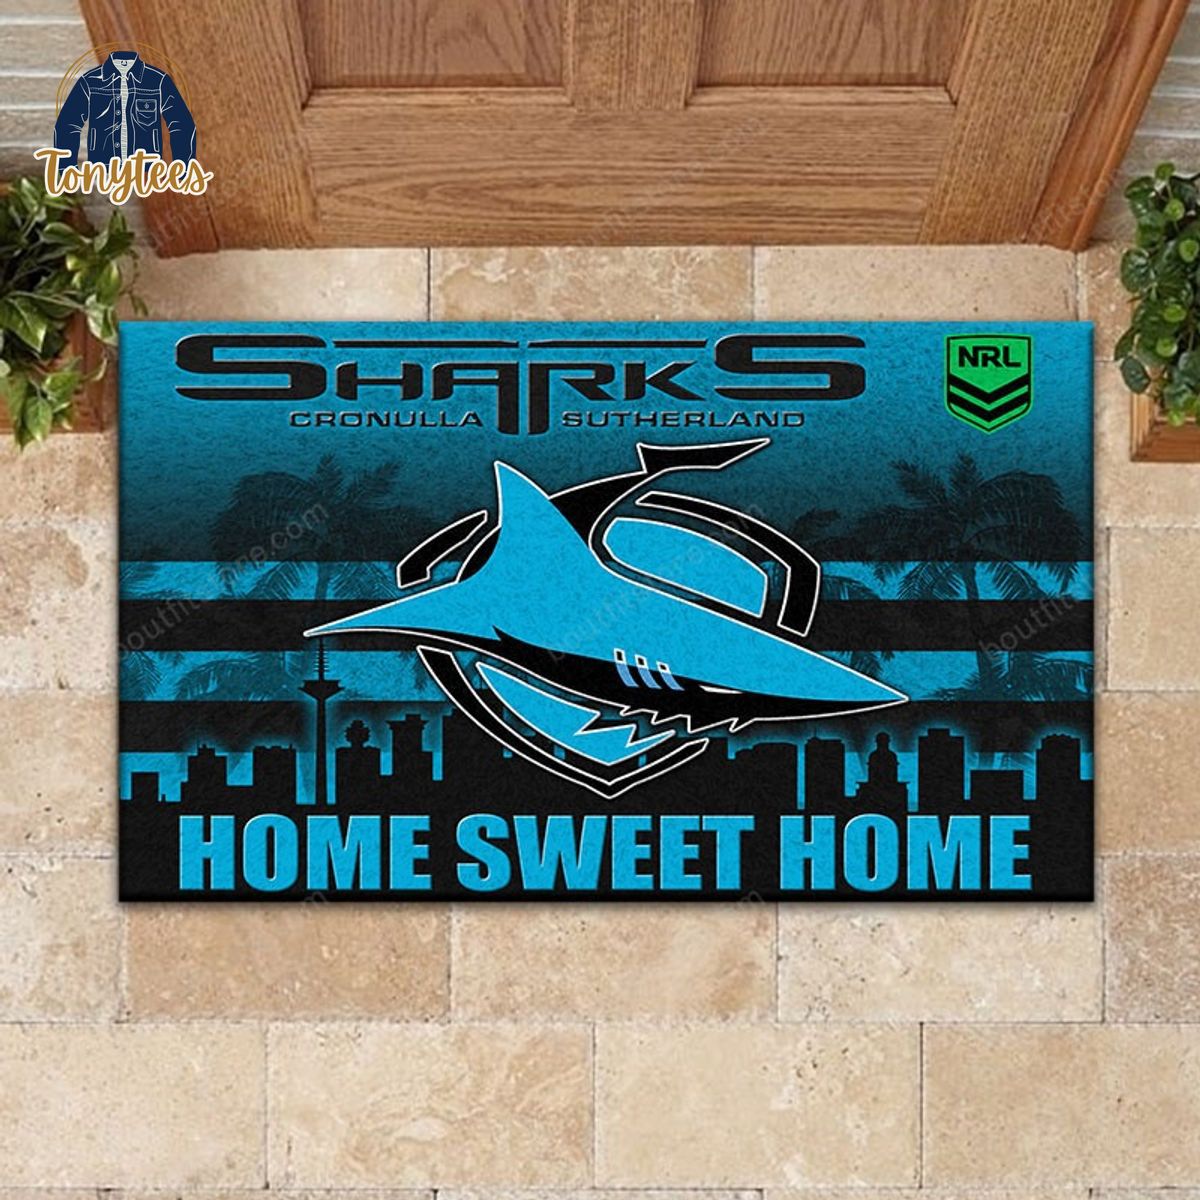 Cronulla Sharks Home Sweet Home Doormat